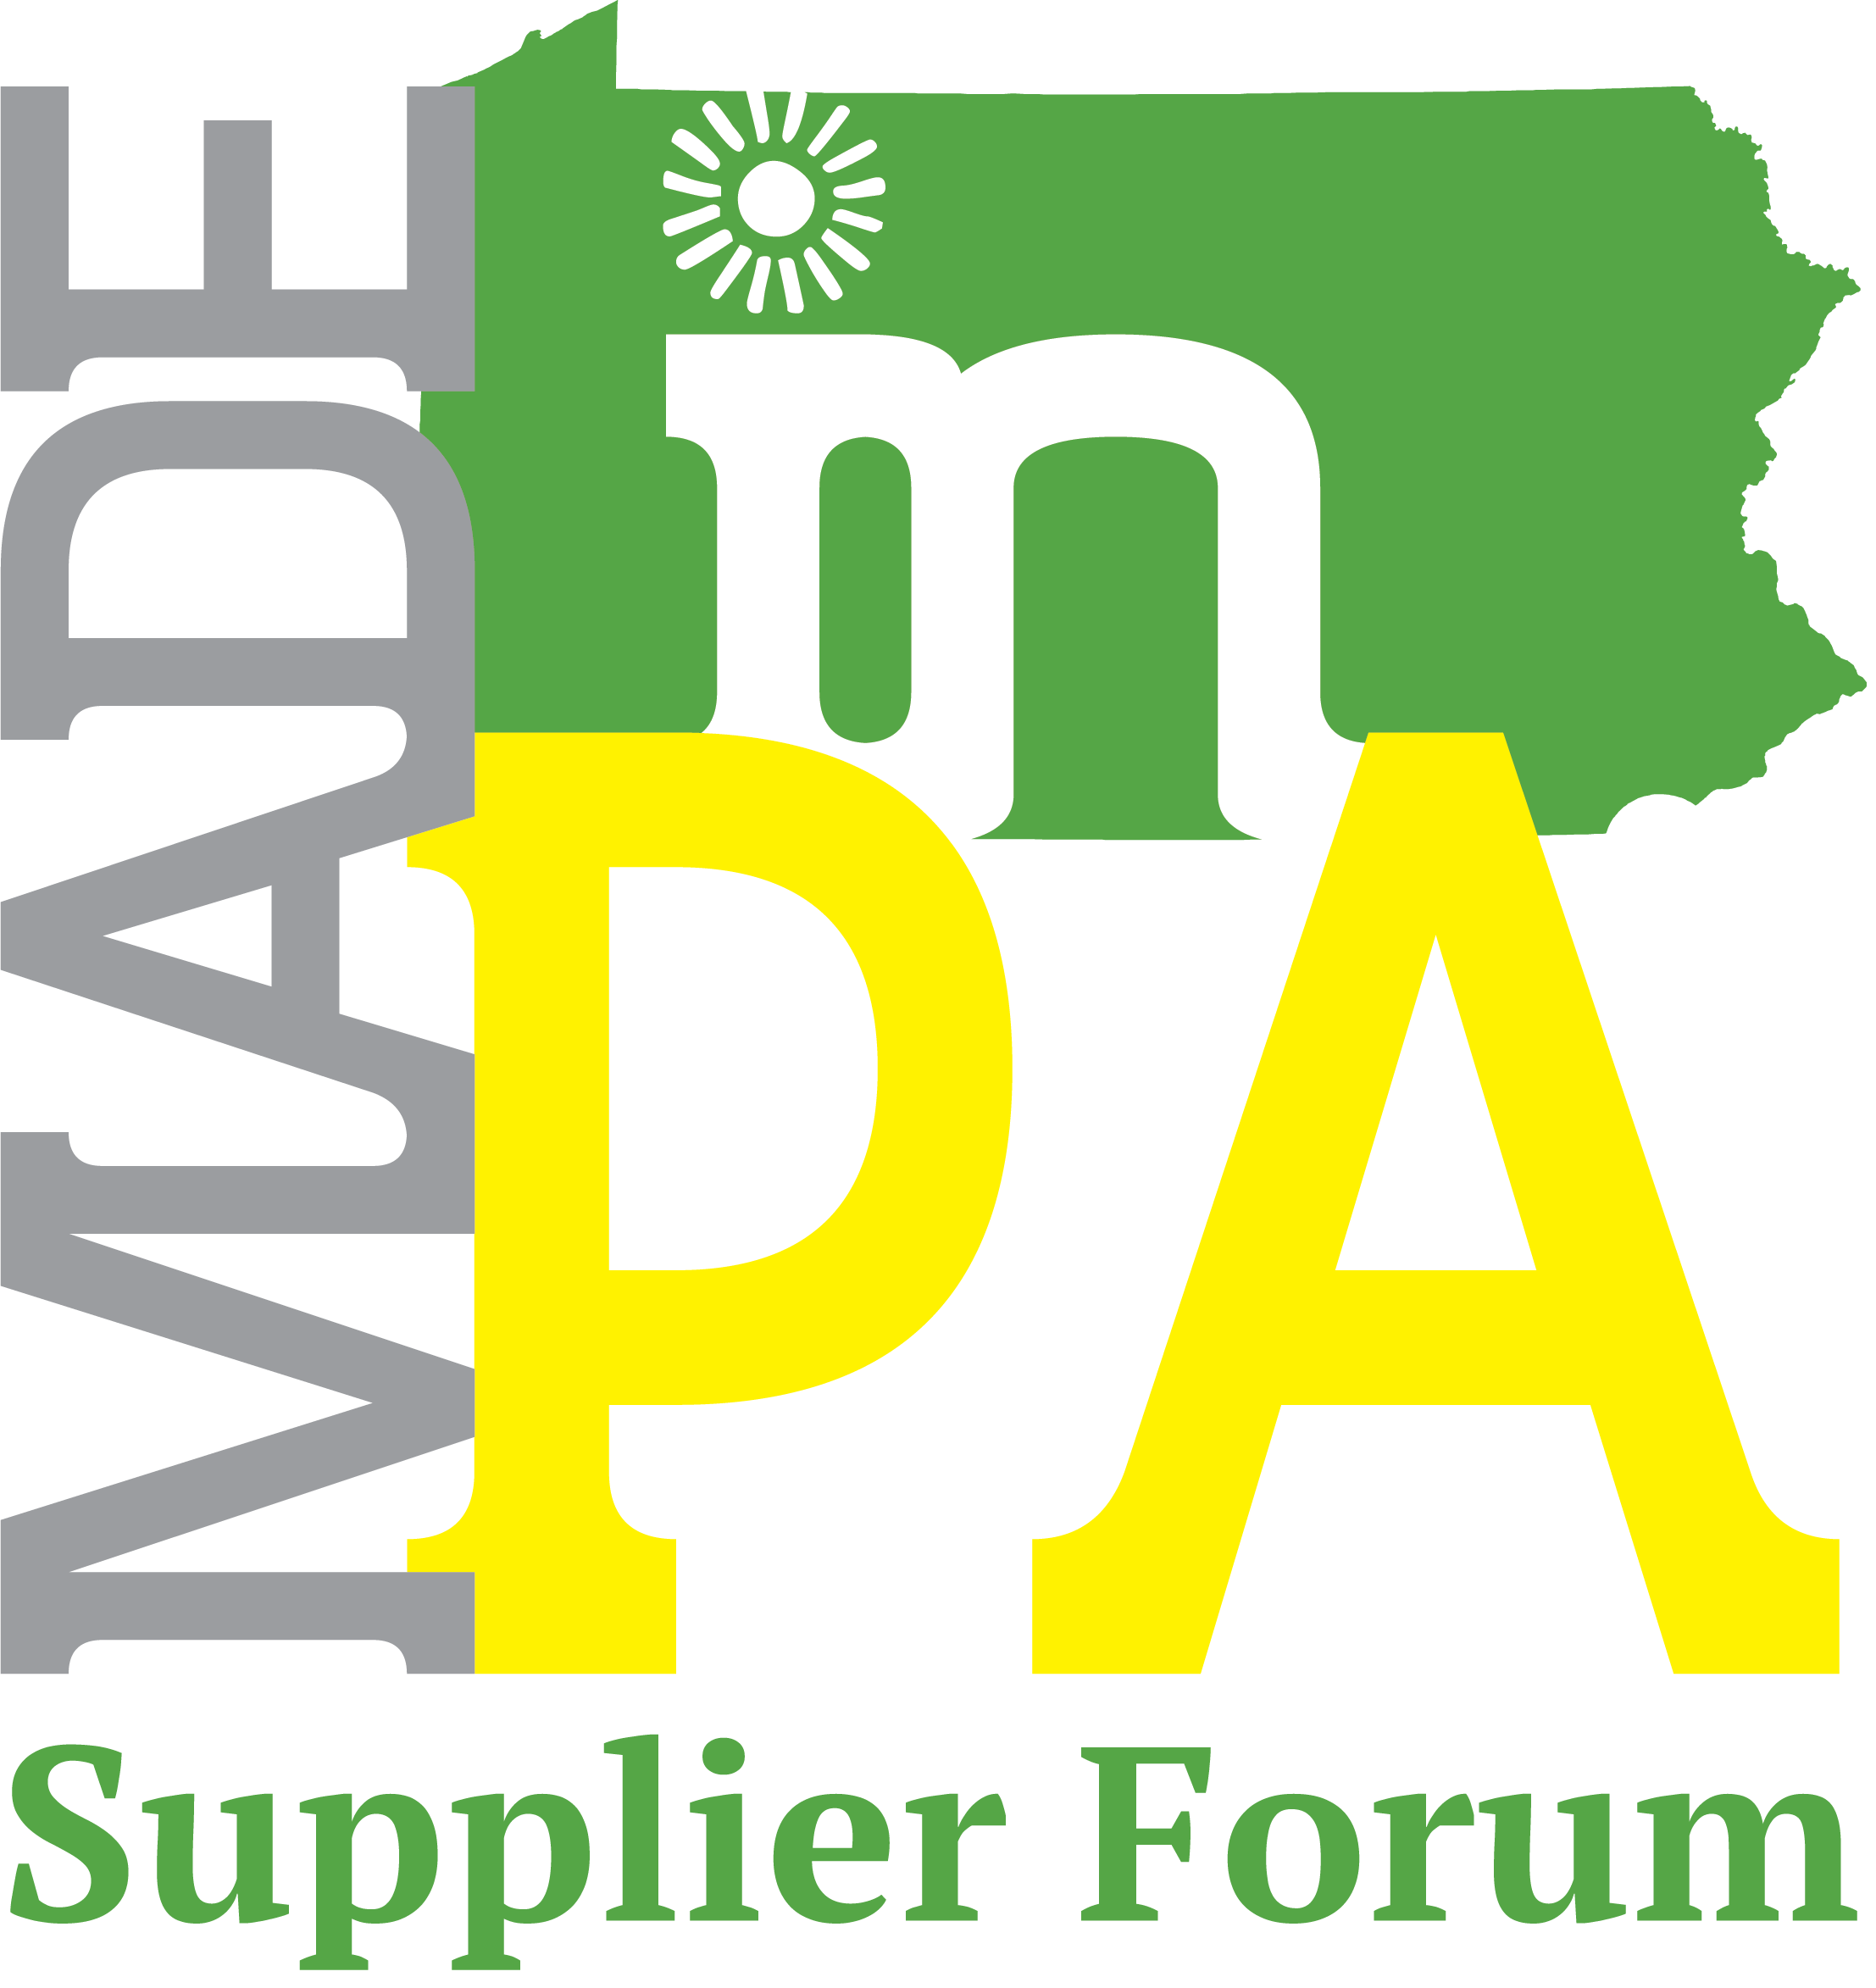 Supplier forum logo